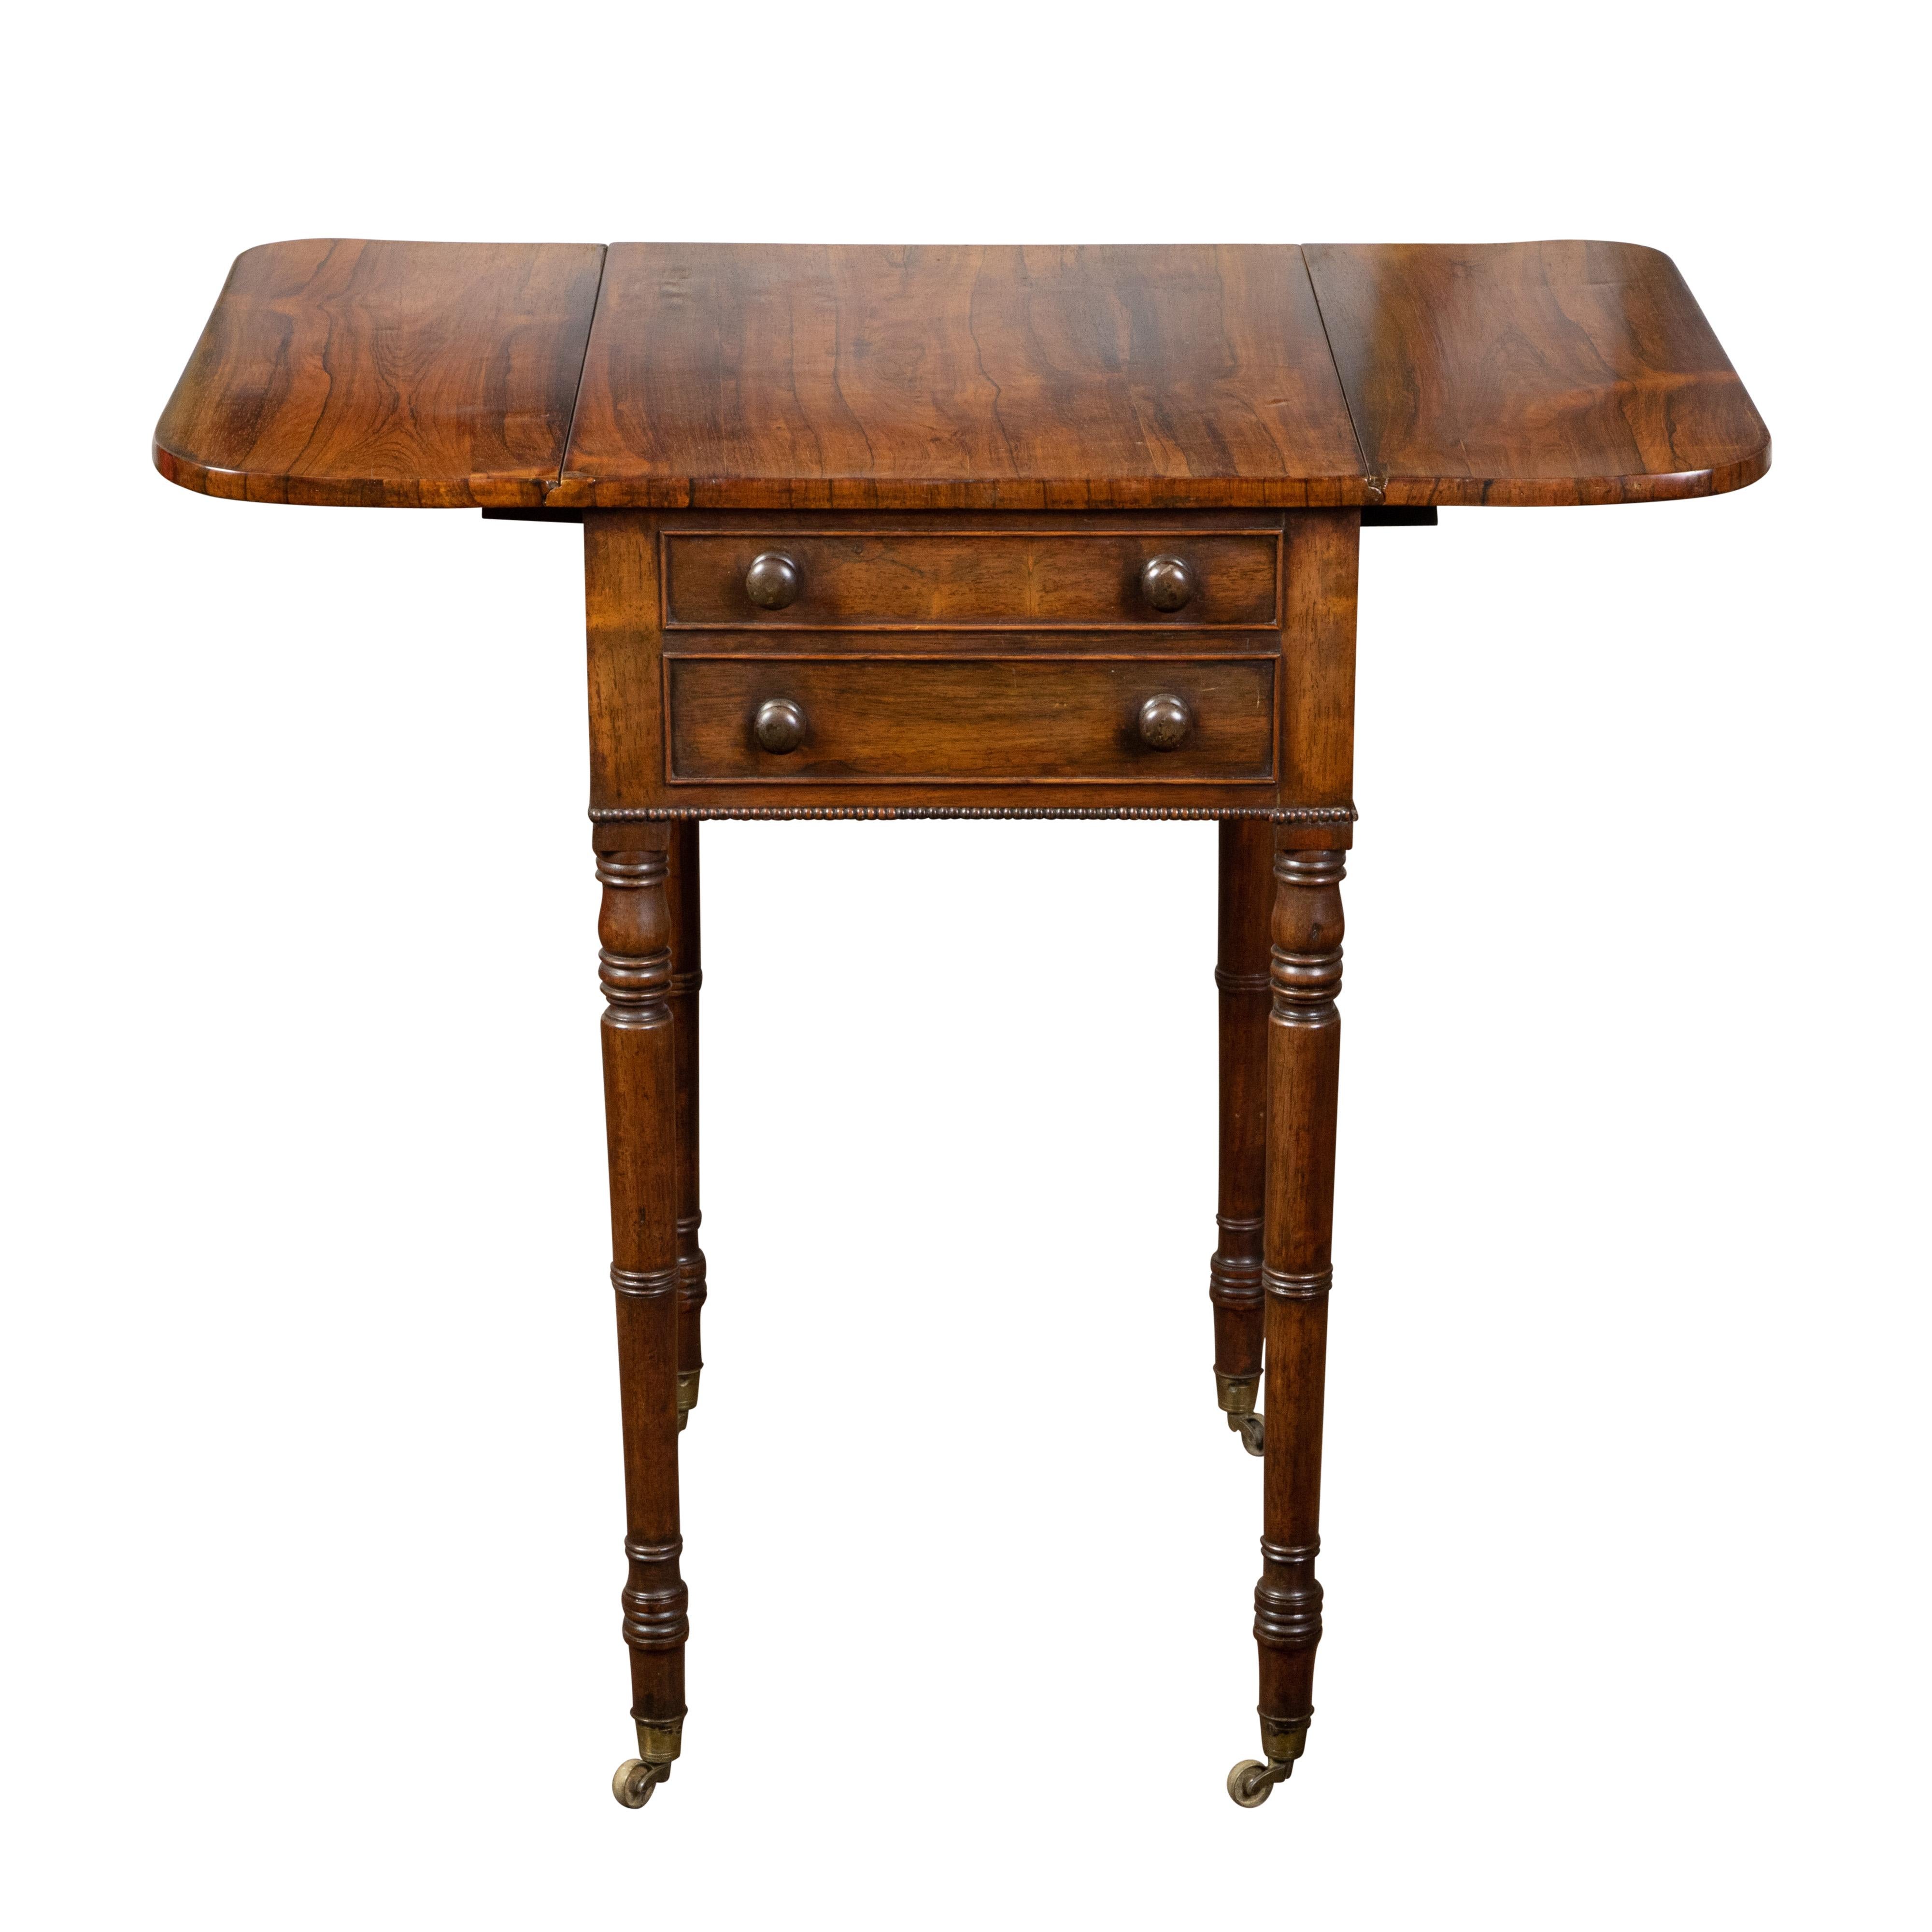 Ein englischer Pembroke-Tisch aus Mahagoni der Regency-Periode aus dem frühen 19. Jahrhundert, mit zwei Klapptischen und Schubladen. Dieser Pembroke-Tisch wurde im ersten Viertel des 19. Jahrhunderts in England hergestellt und verfügt über eine